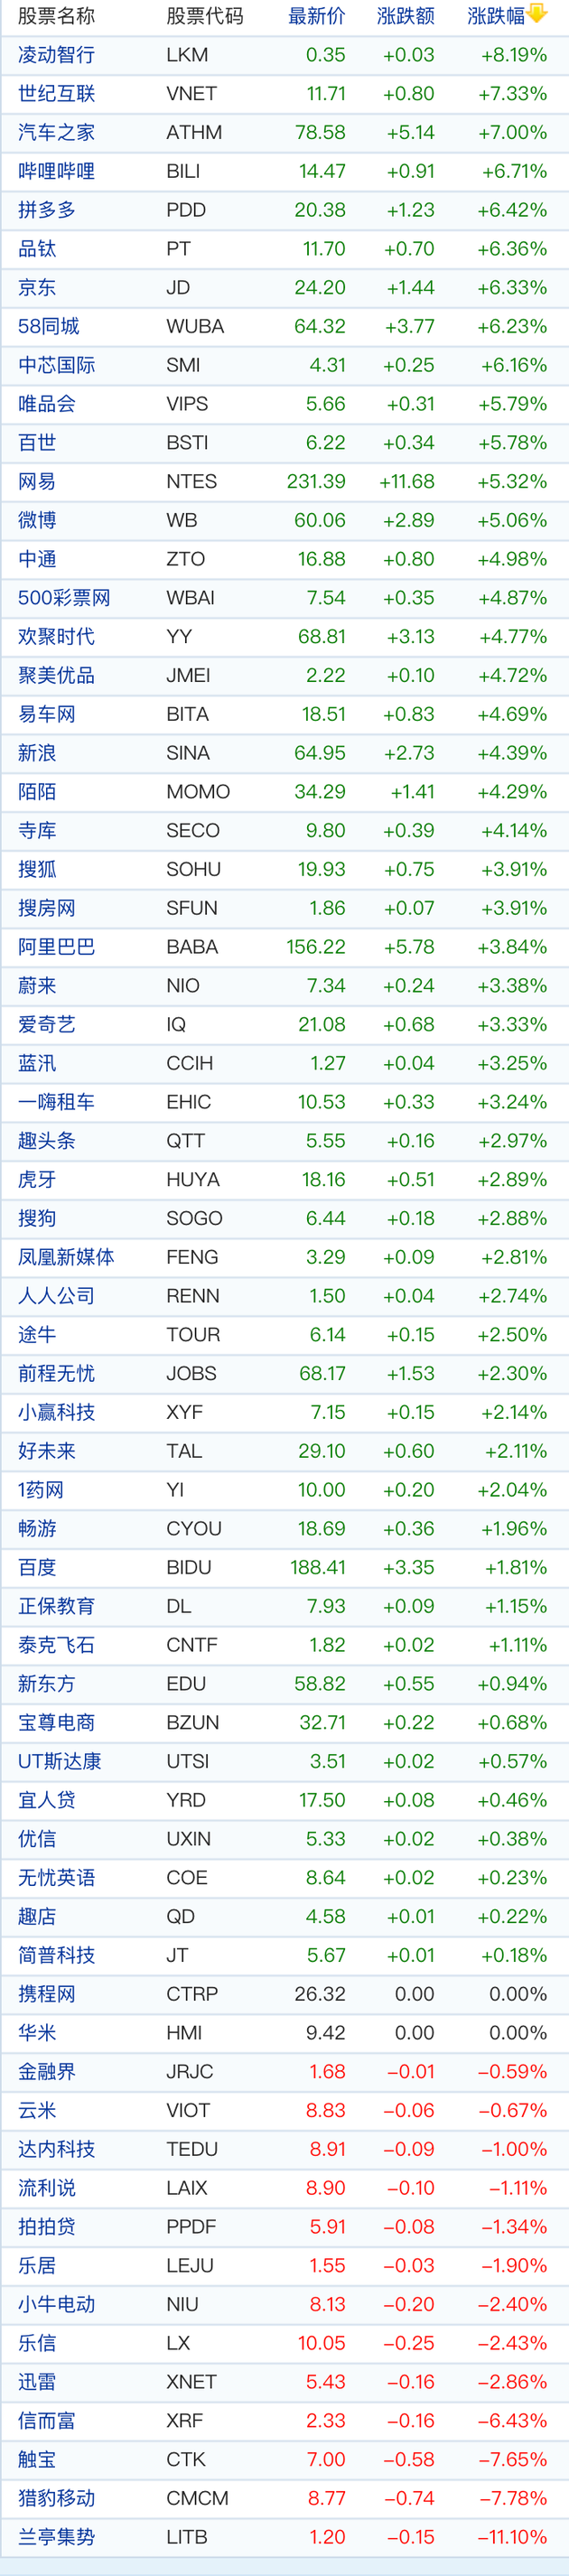 中概股周四收盘普涨 京东涨6.33% 拼多多涨6.42% 3只股票跌幅超过7%